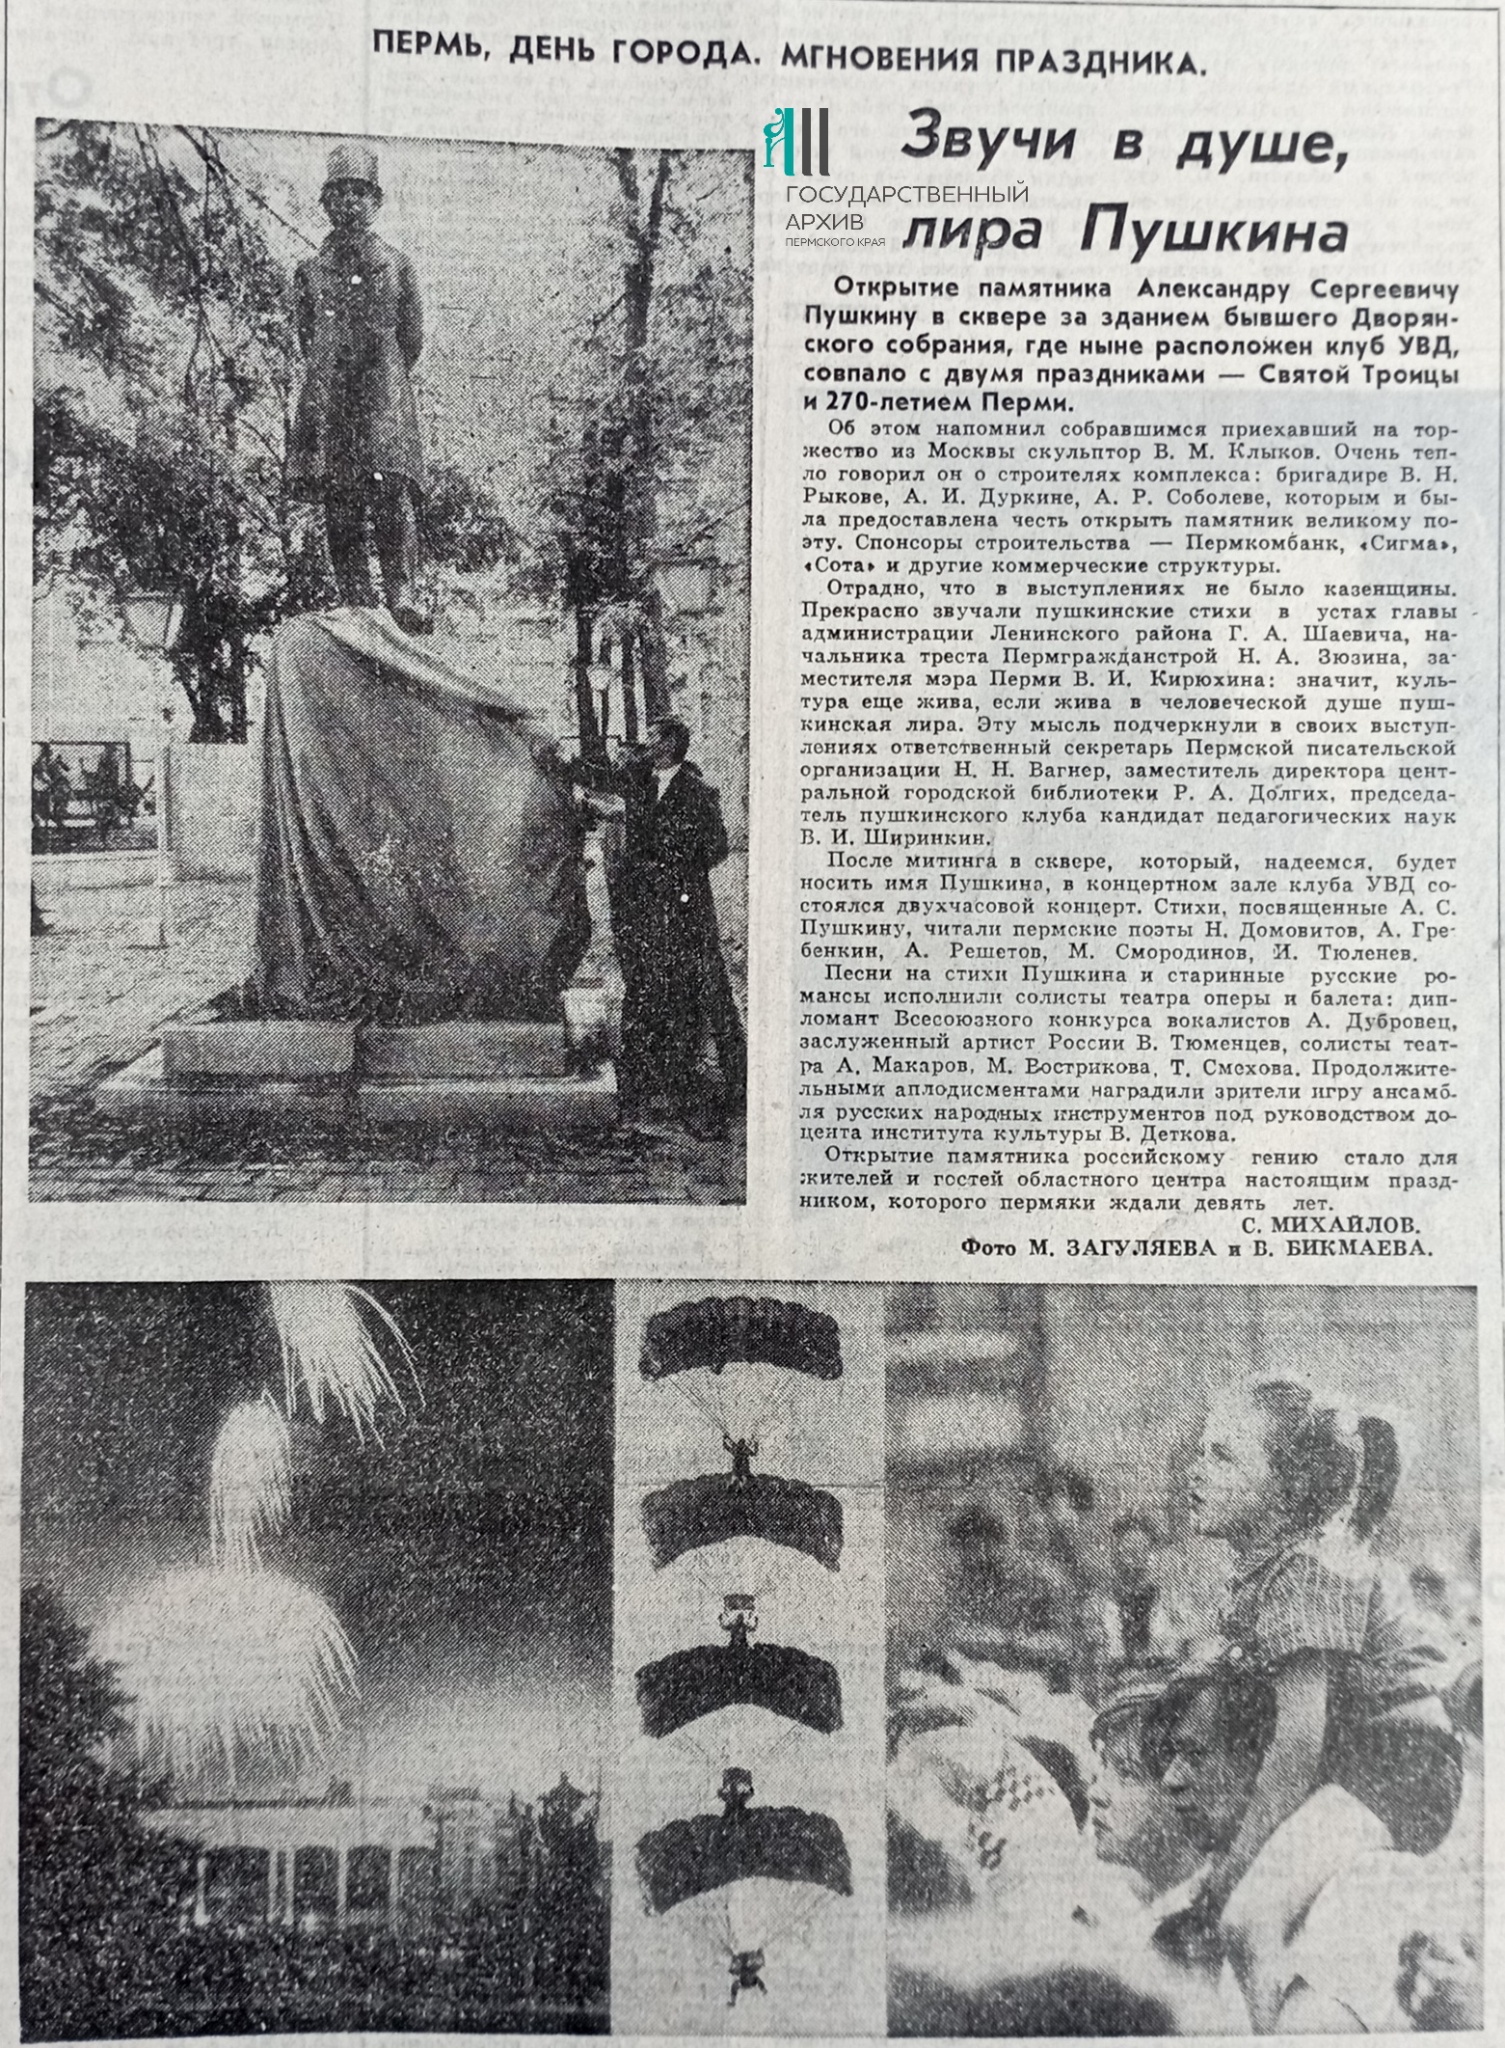 Статья в газете «Звезда», 8 июня 1993 года<i class="_"> </i>